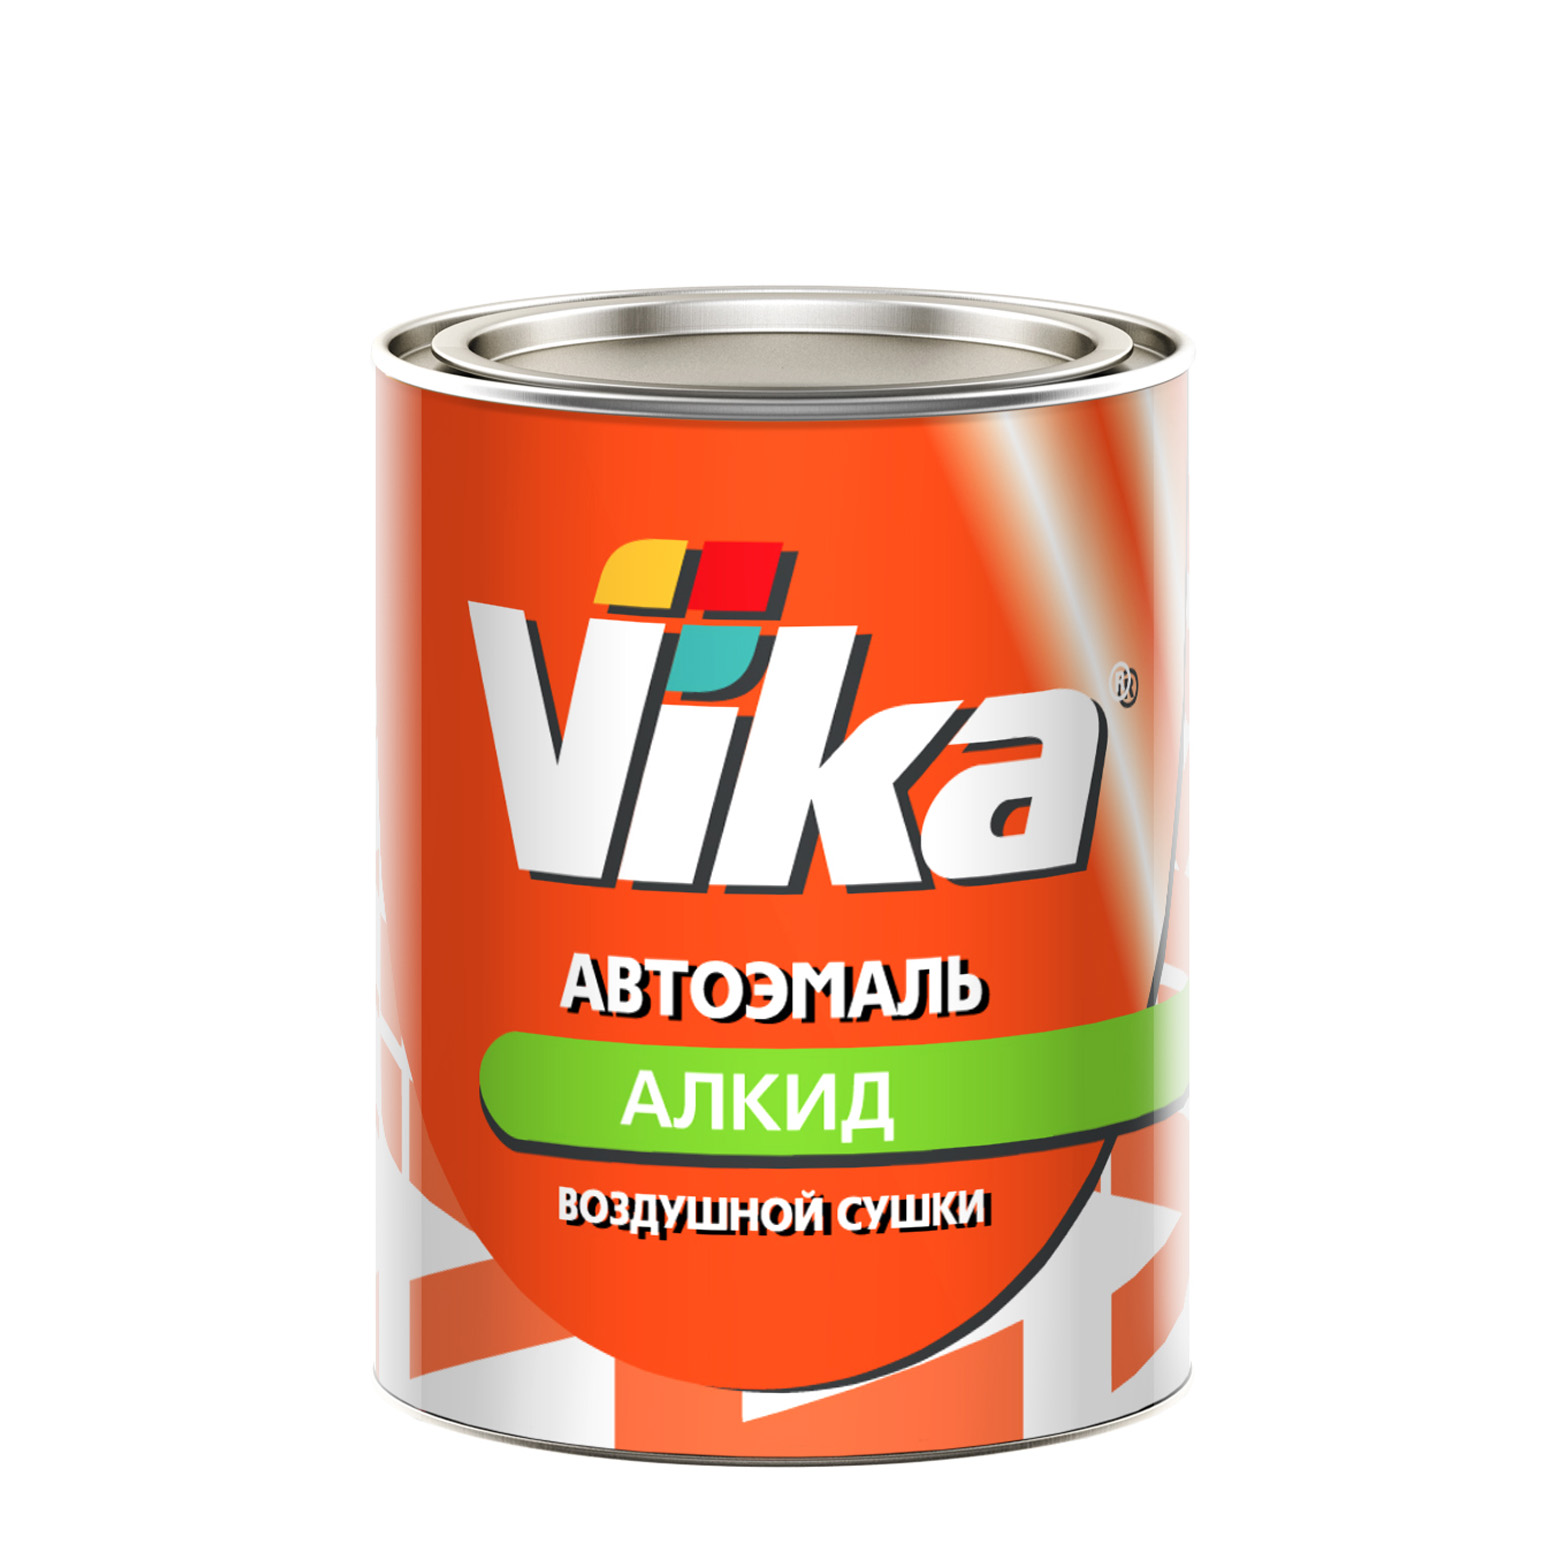 Фото 1 - Автоэмаль Vika-60, цвет 215 Желтовато-Белая алкидная глянцевая естественной сушки - 0,8 кг.